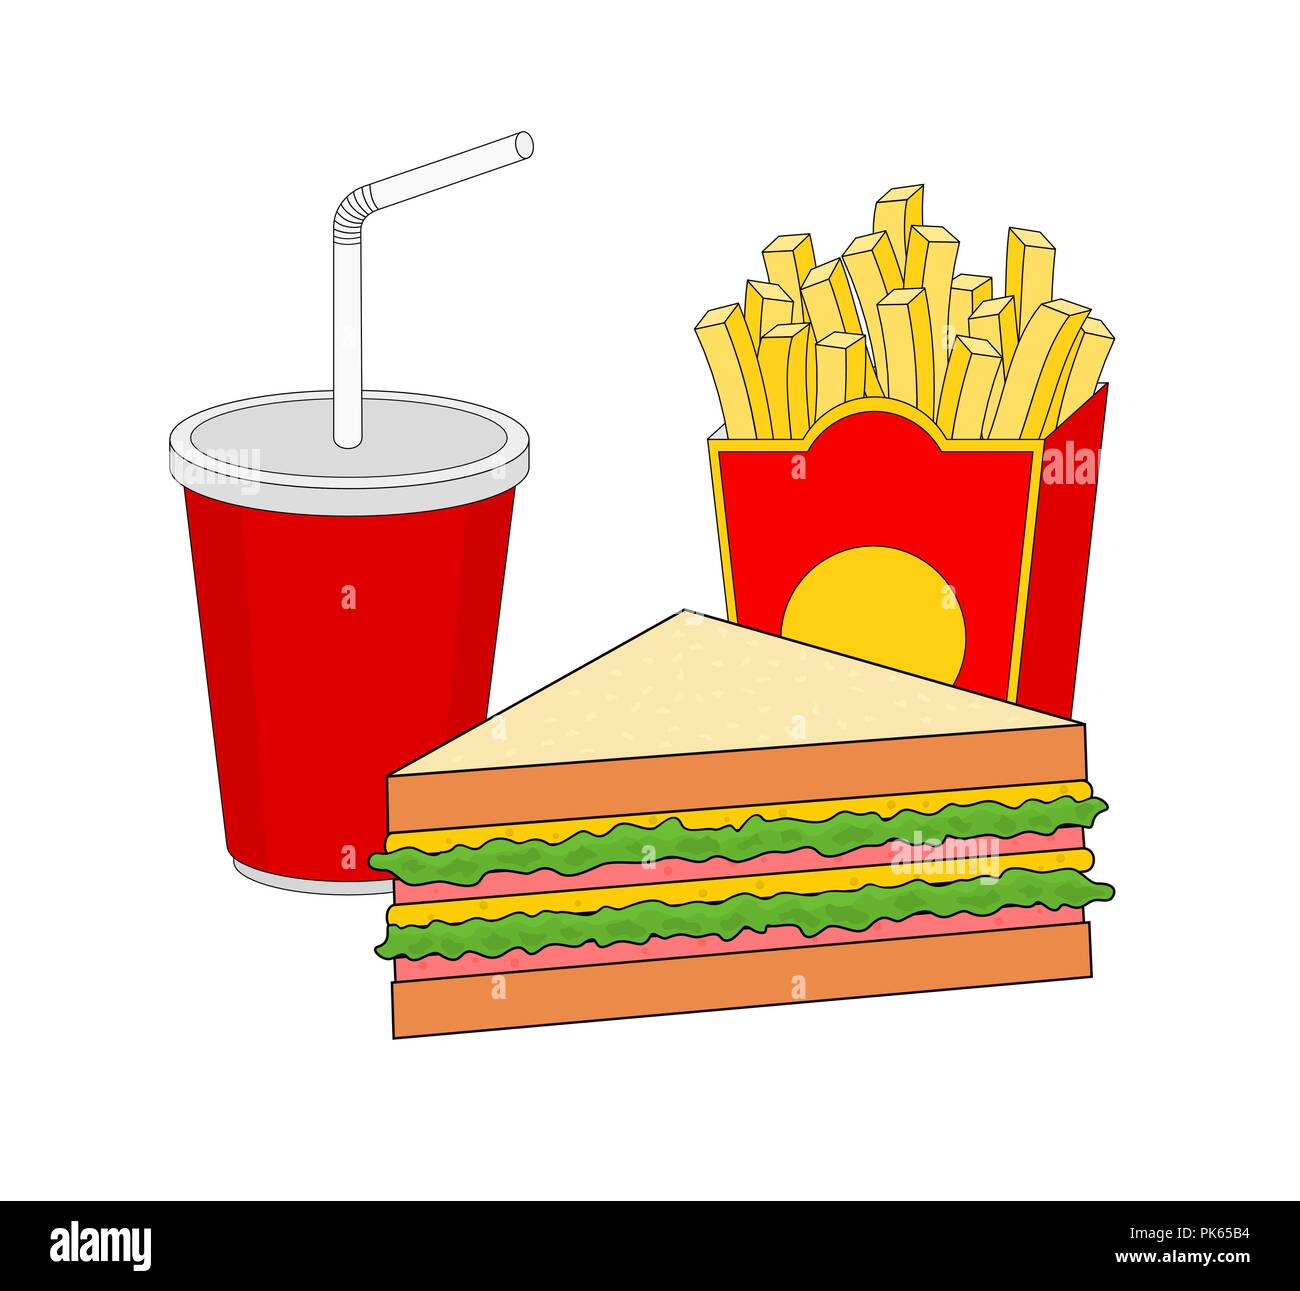 Délicieux isolés restauration rapide menu déjeuner avec sandwich au jambon , frites et boisson Illustration de Vecteur